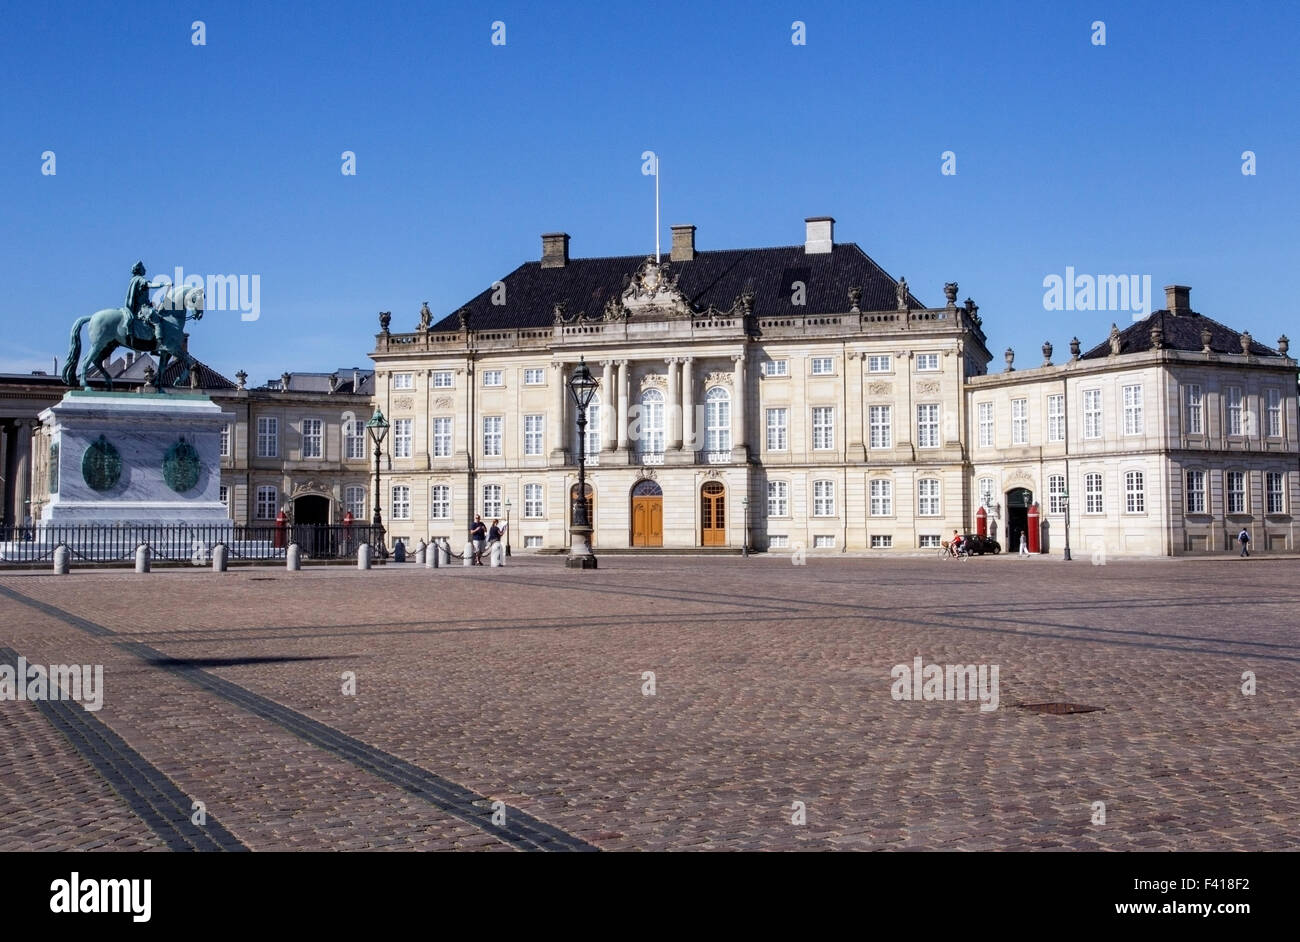 Vue sur le Palais Royal d'Amalienborg, Copenhague, Danemark Banque D'Images